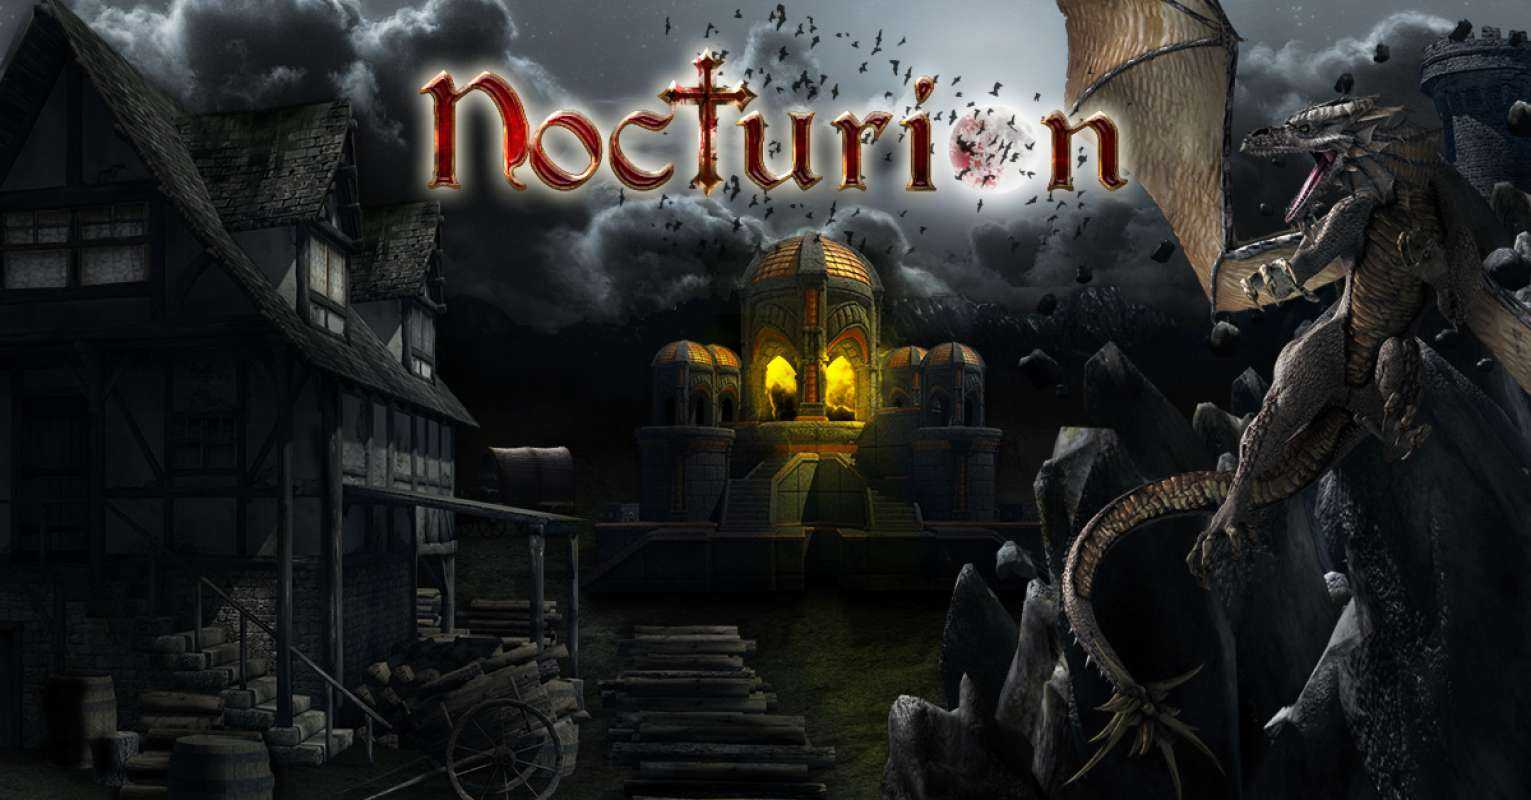 Nocturion